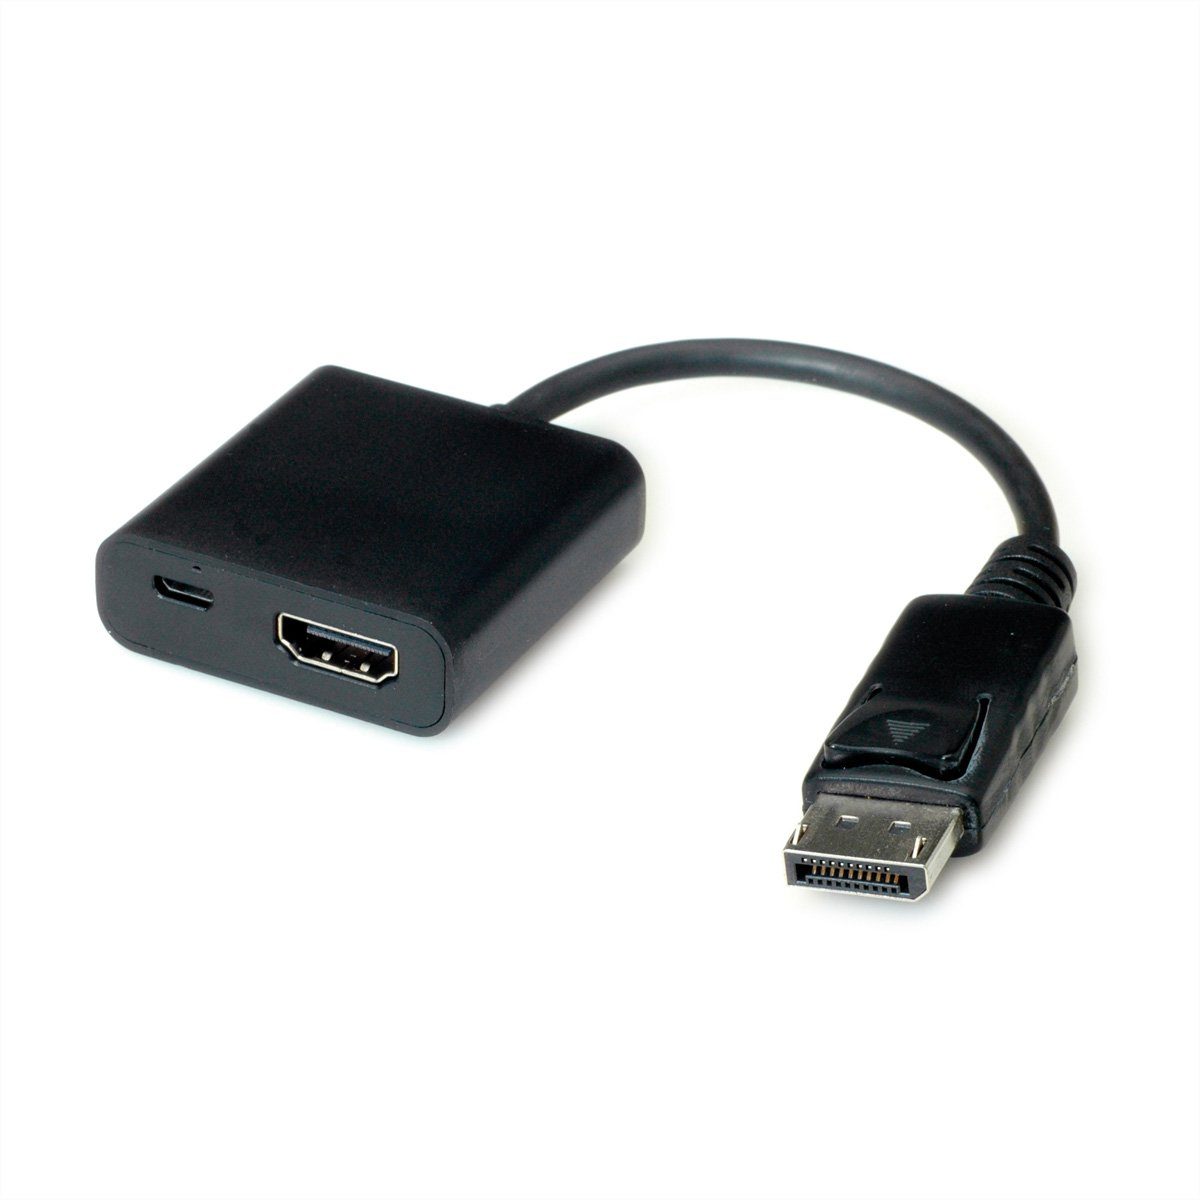 VALUE »HDMI-DisplayPort Adapter, v1.2, HDMI BU - DP ST« Audio- & Video-Adapter  HDMI Typ A Weiblich (Buchse) zu DisplayPort Männlich (Stecker), 15.0 cm  online kaufen | OTTO